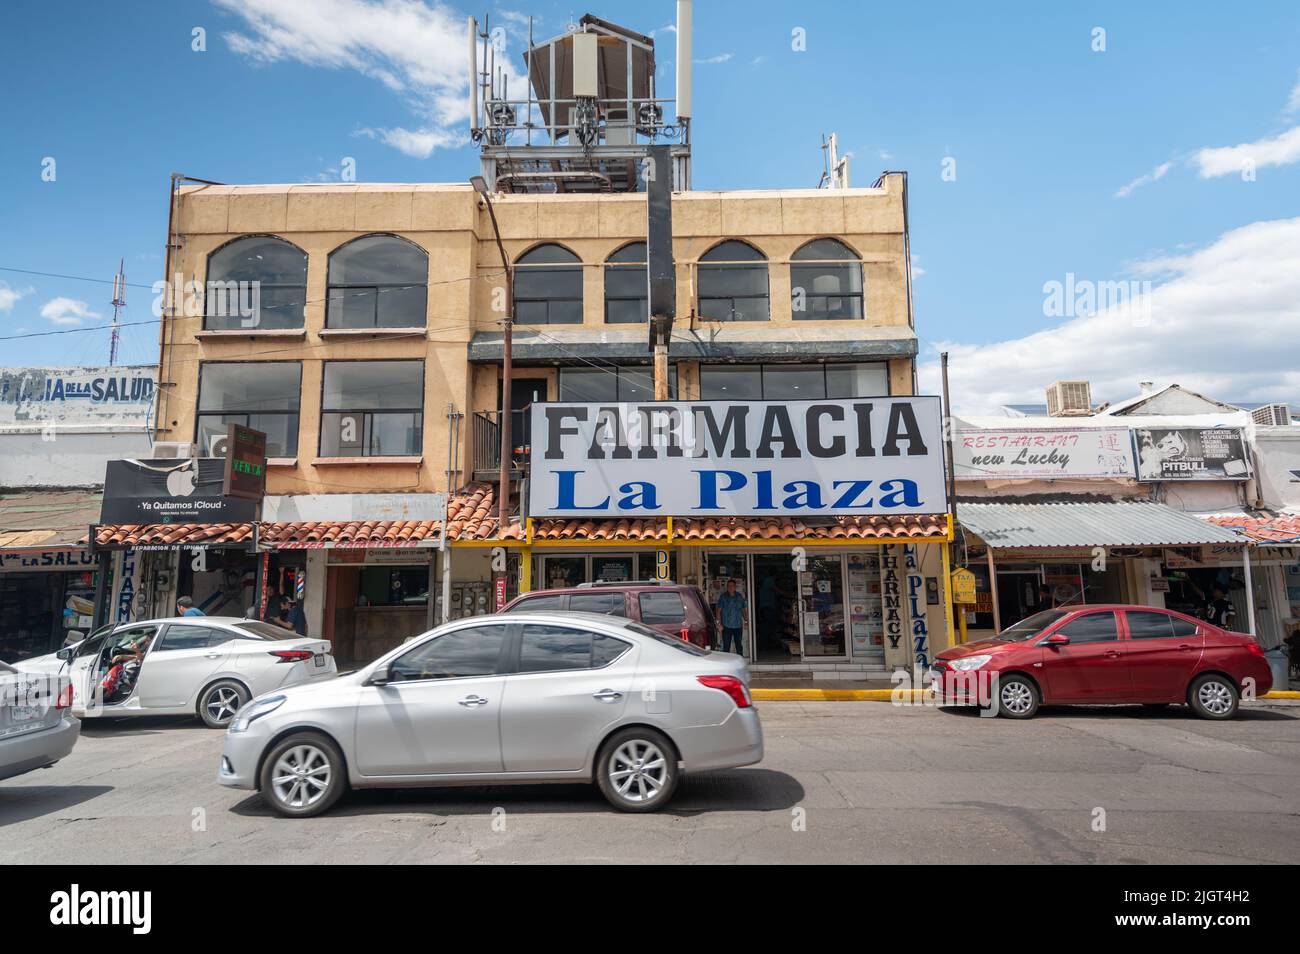 Apotheke und andere Geschäfte in Nogales, Sonora Mexiko. Mexikanische Stadt südlich der Grenze. Stockfoto